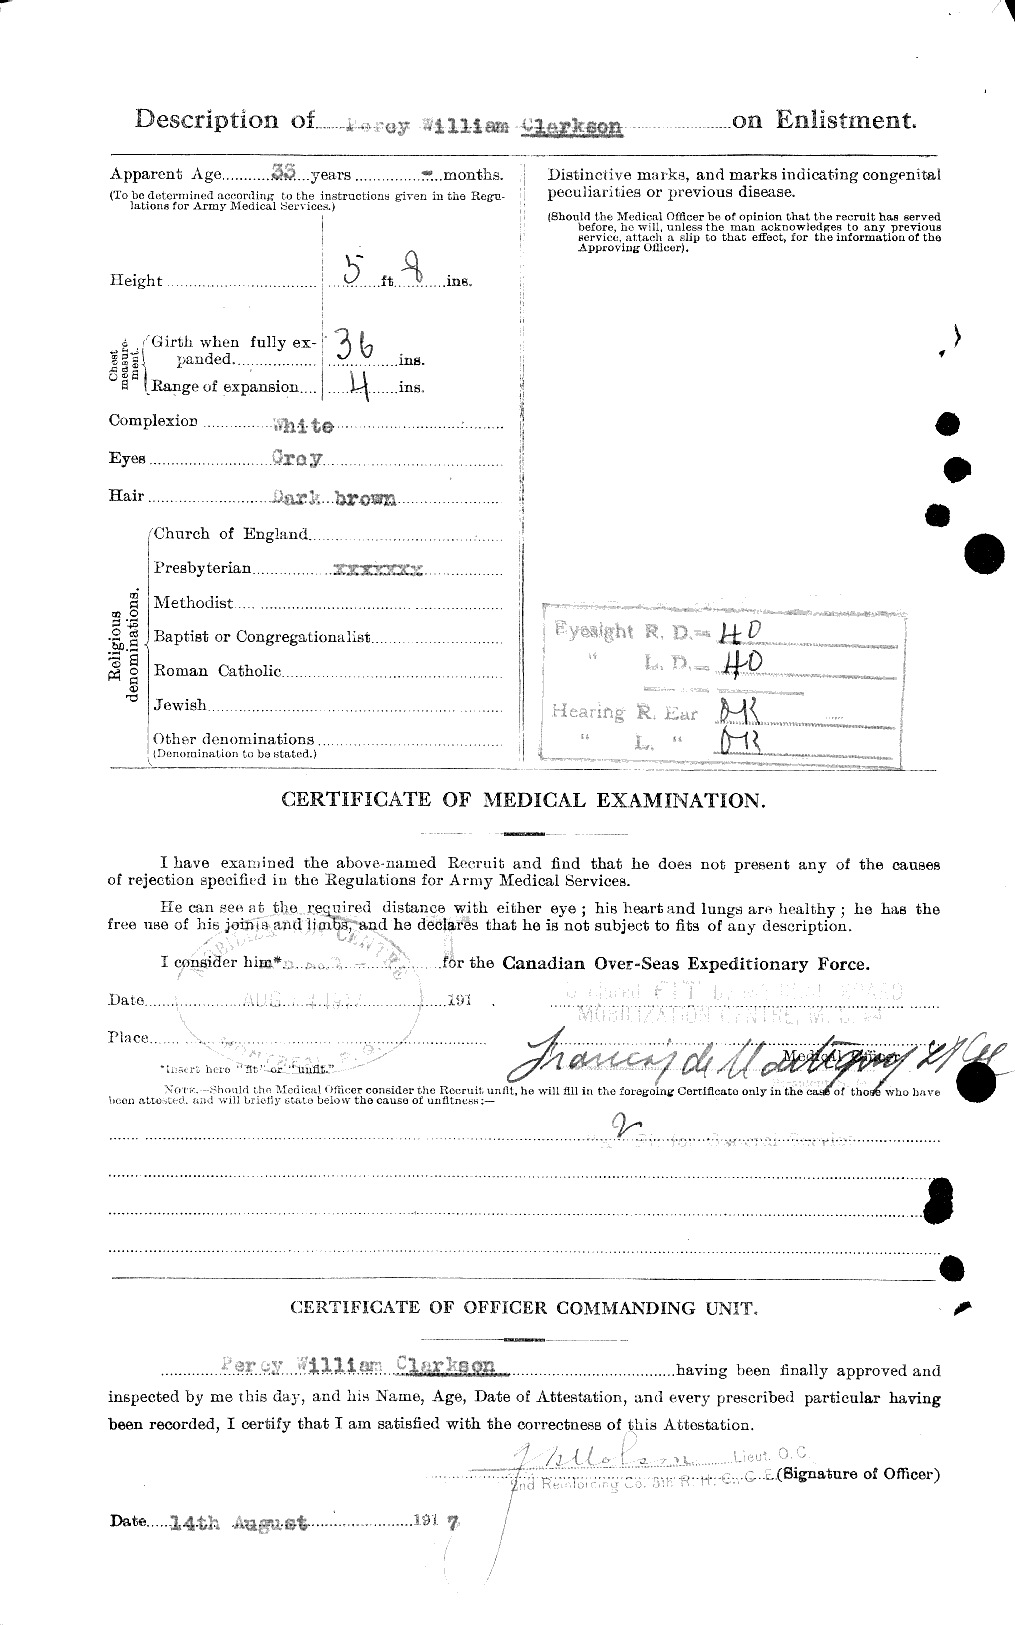 Dossiers du Personnel de la Première Guerre mondiale - CEC 021467b